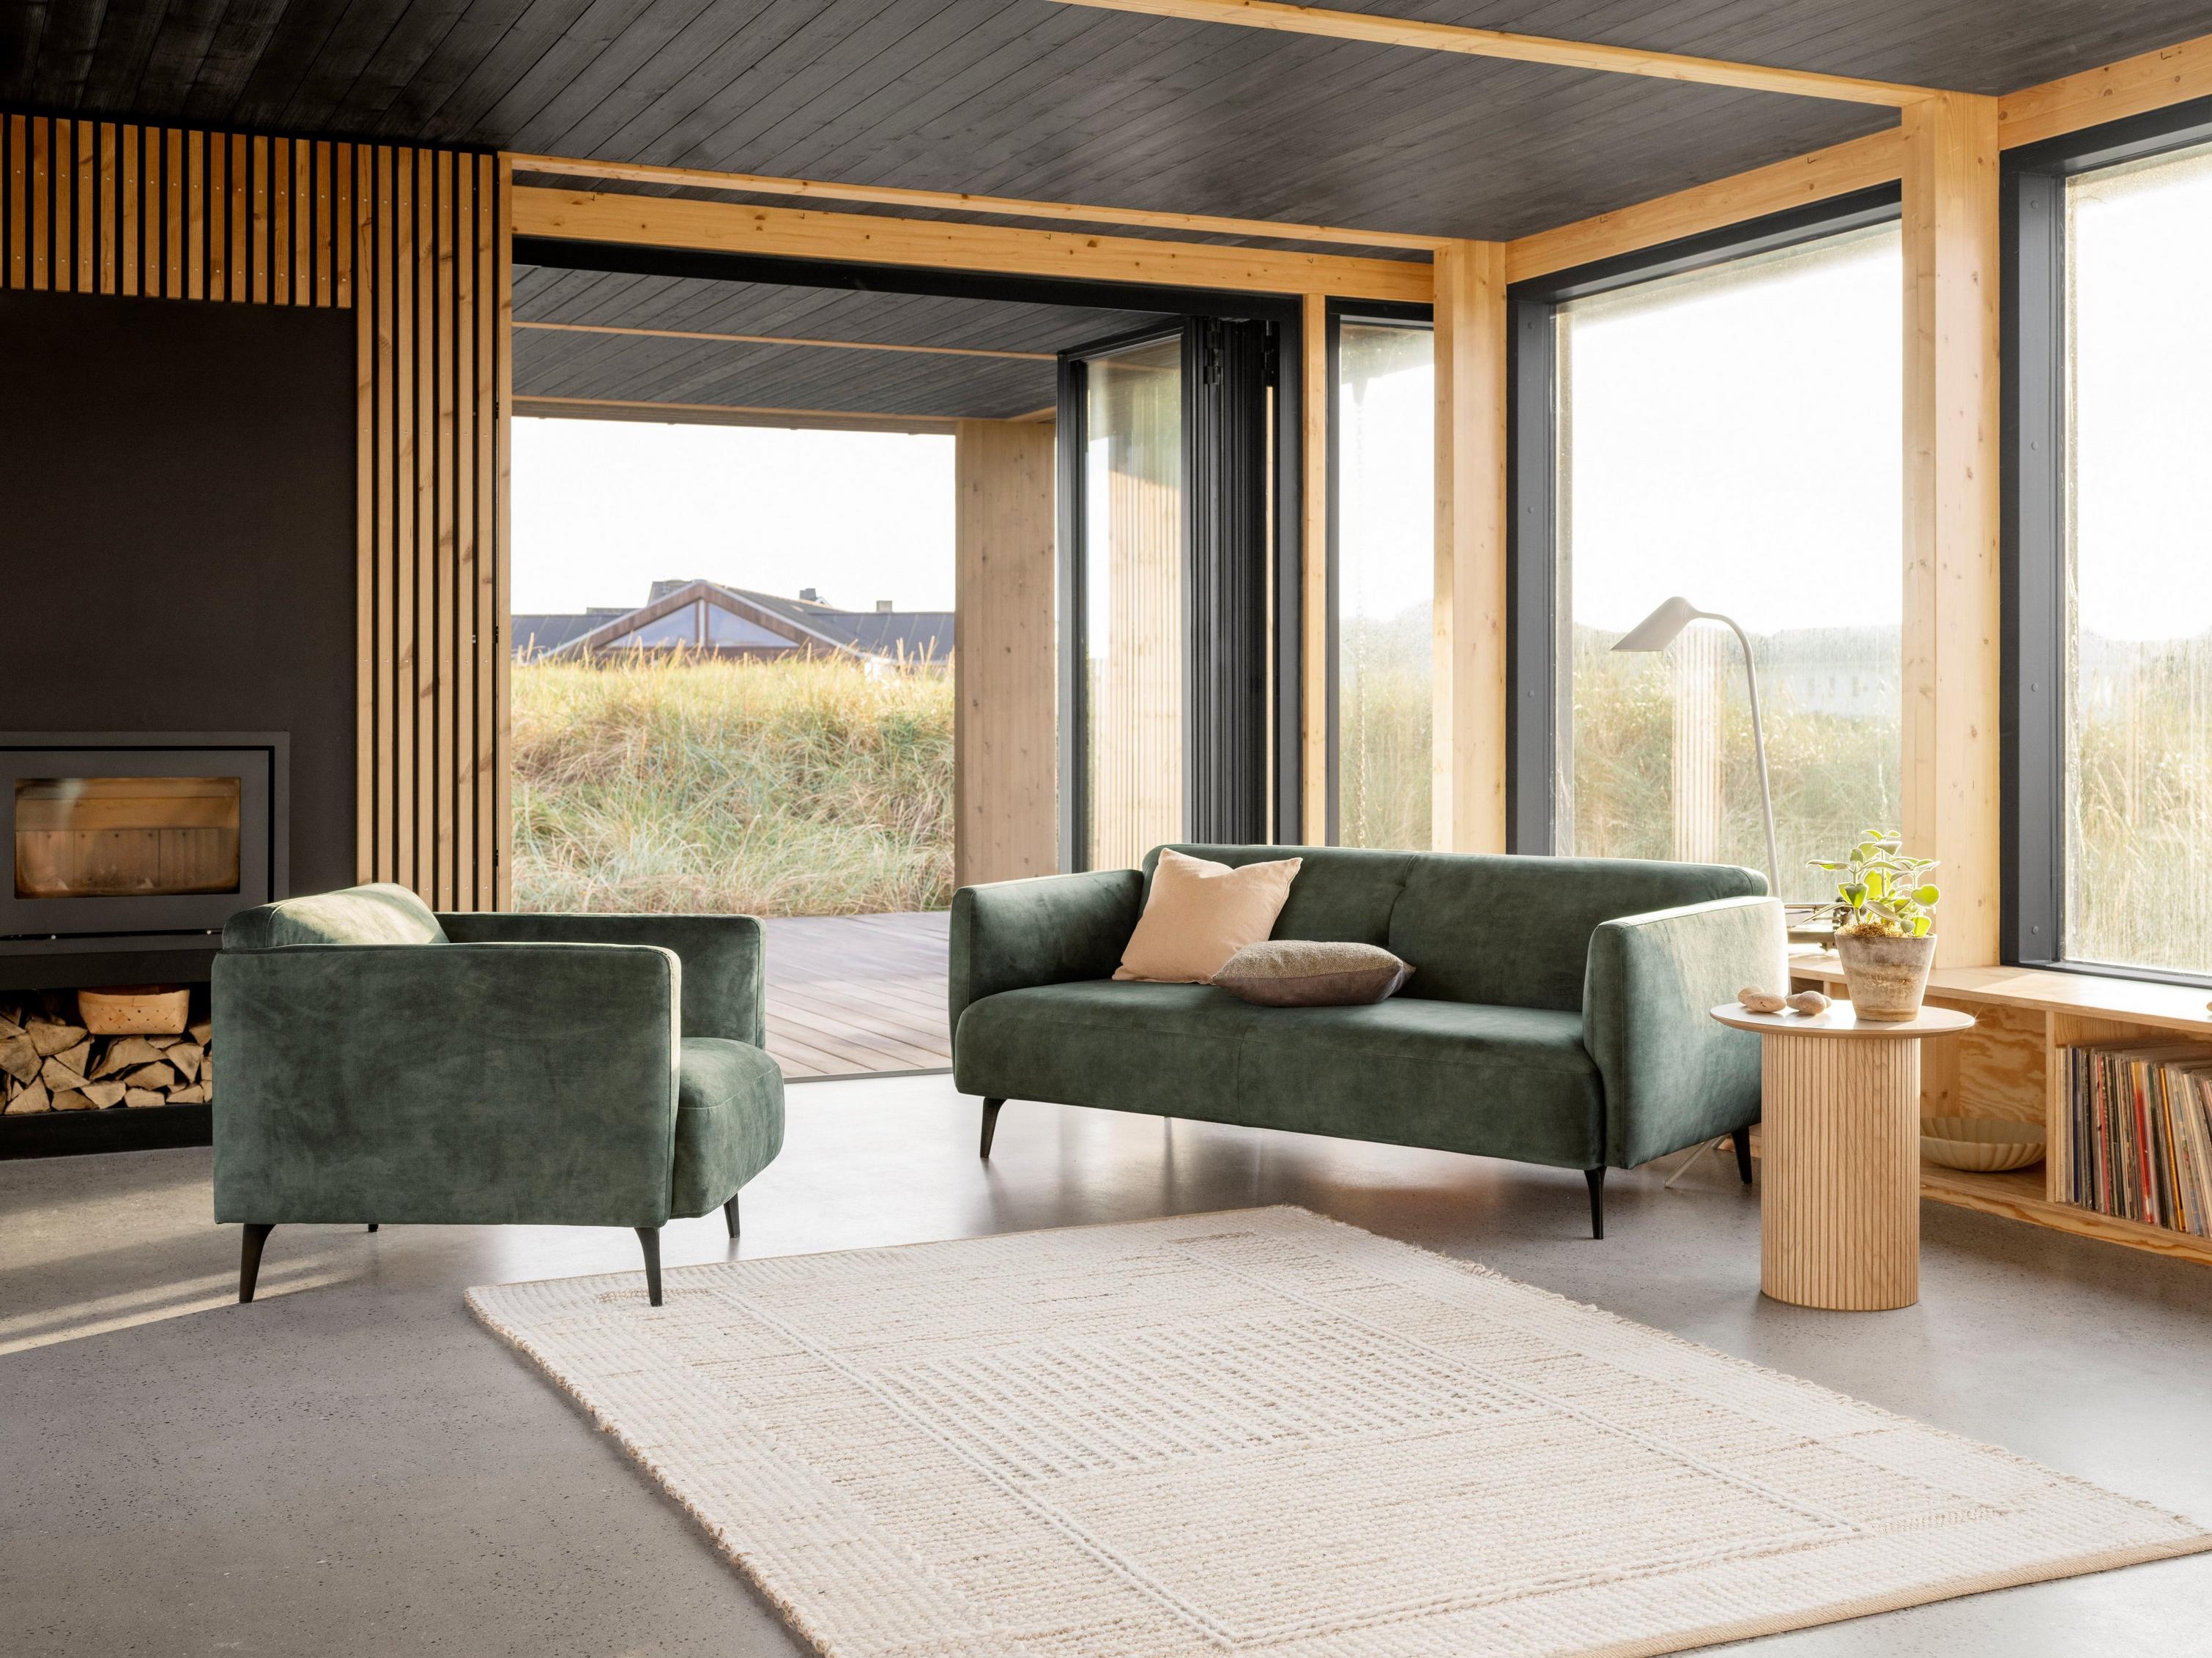 De elegante Modena zitbank en bijpassende fauteuil in groene Ravello stof staan naast een open haard in deze warme woonkamer.